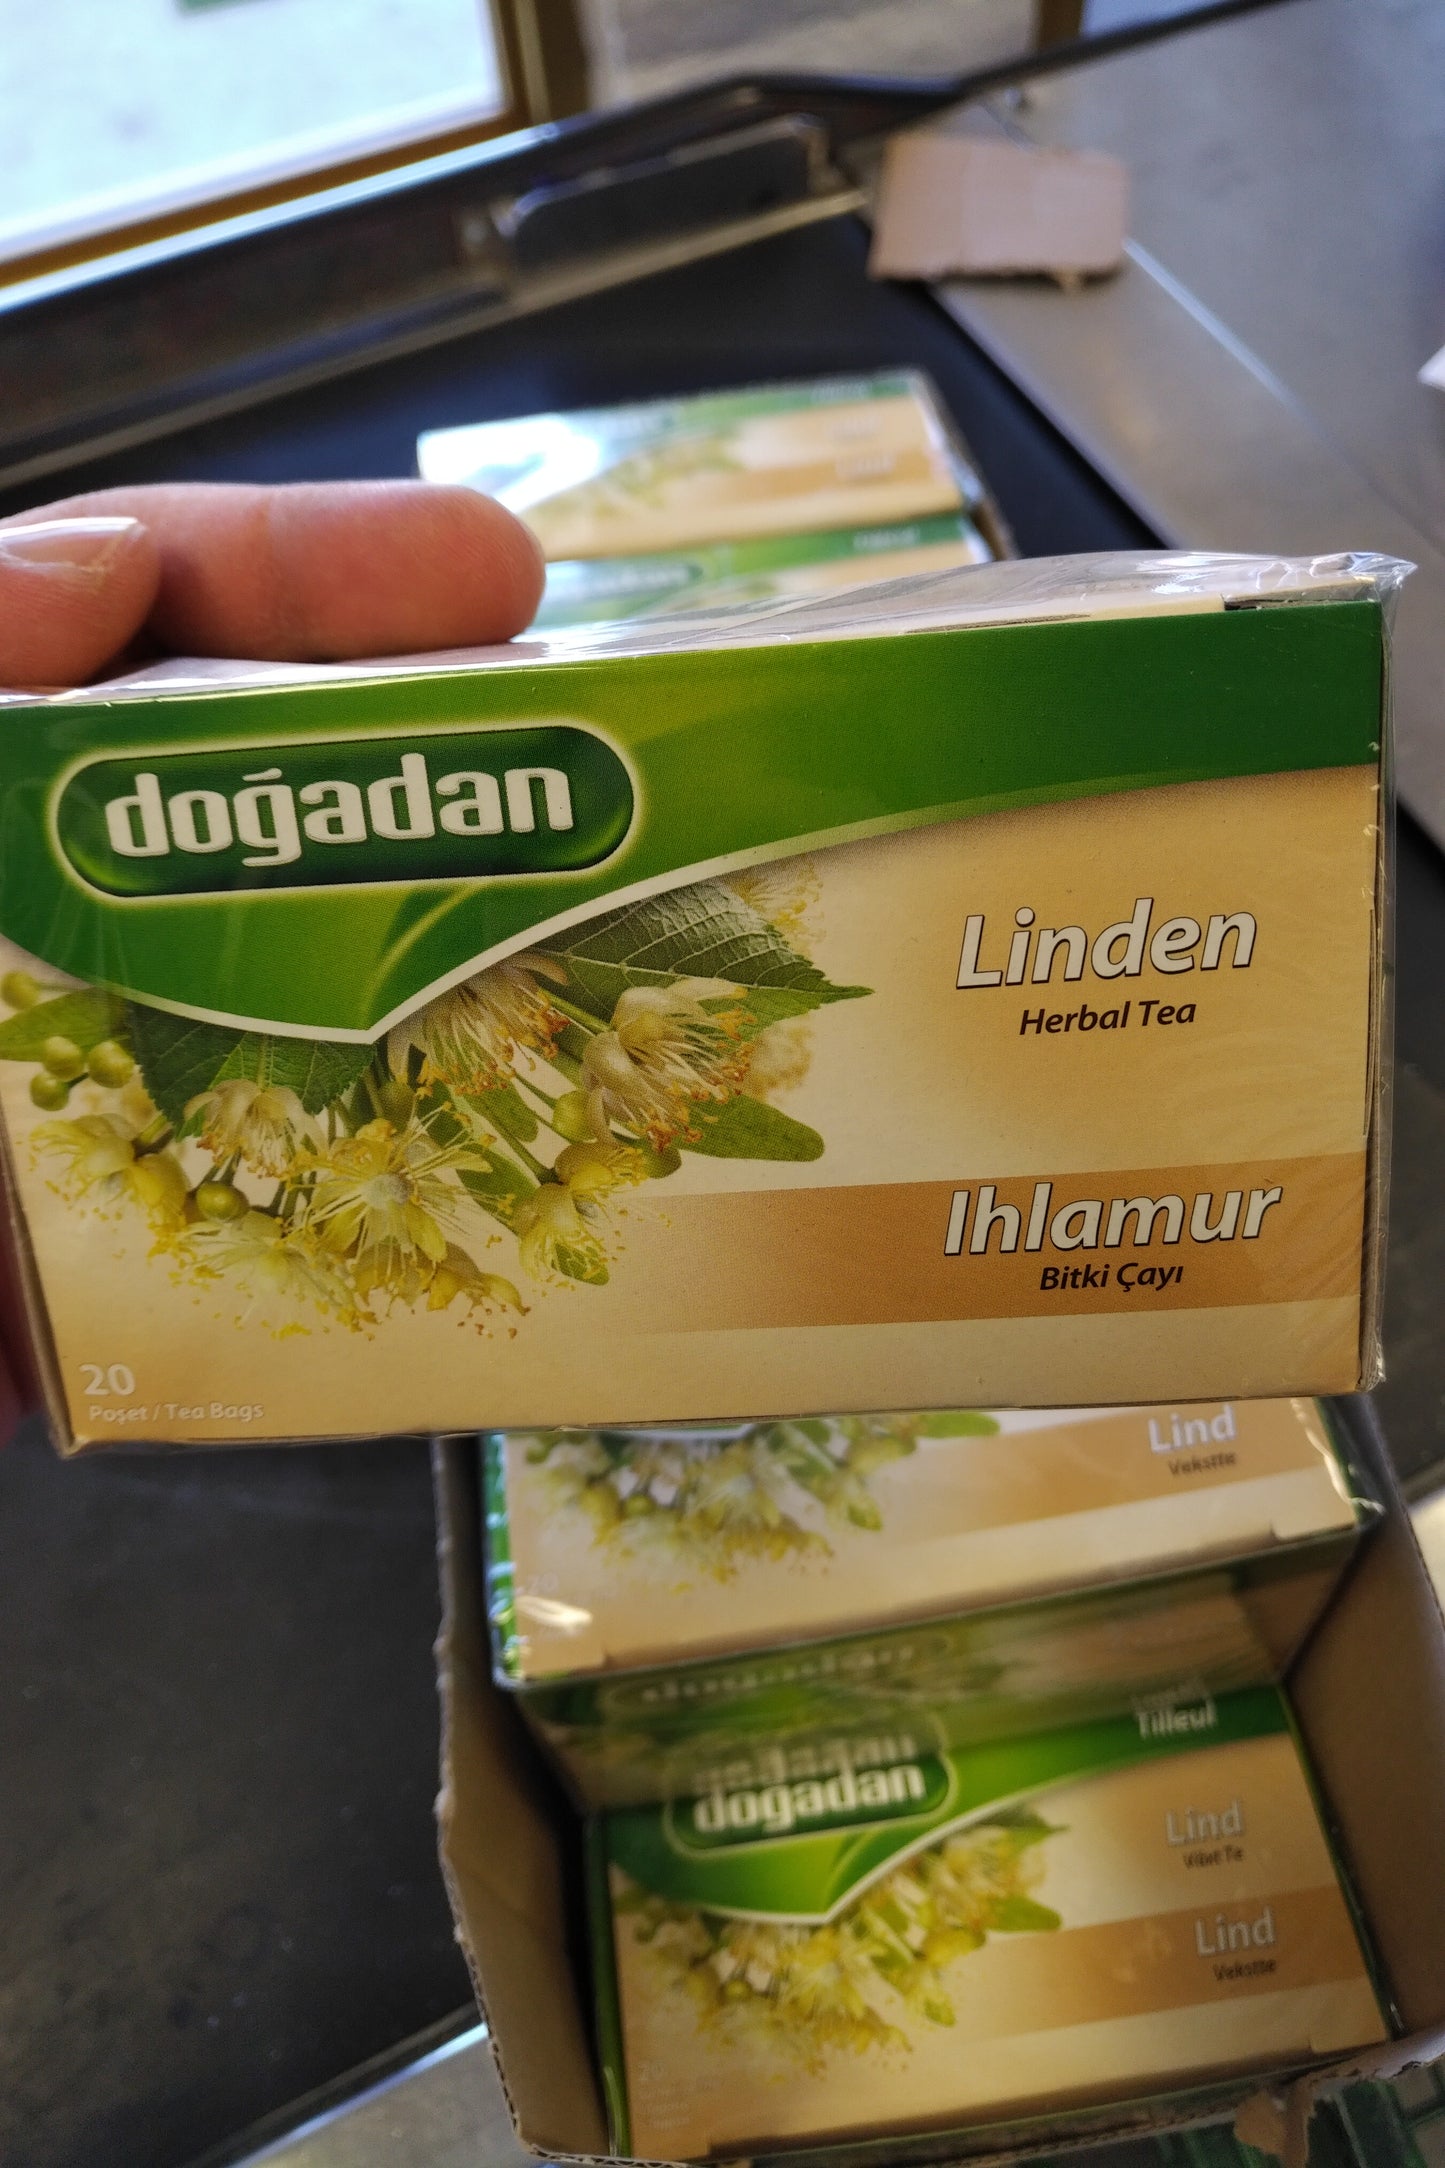 Dogadan Linden Herbal Tea Ihlamur Bitki Cayi 20 tea Bags